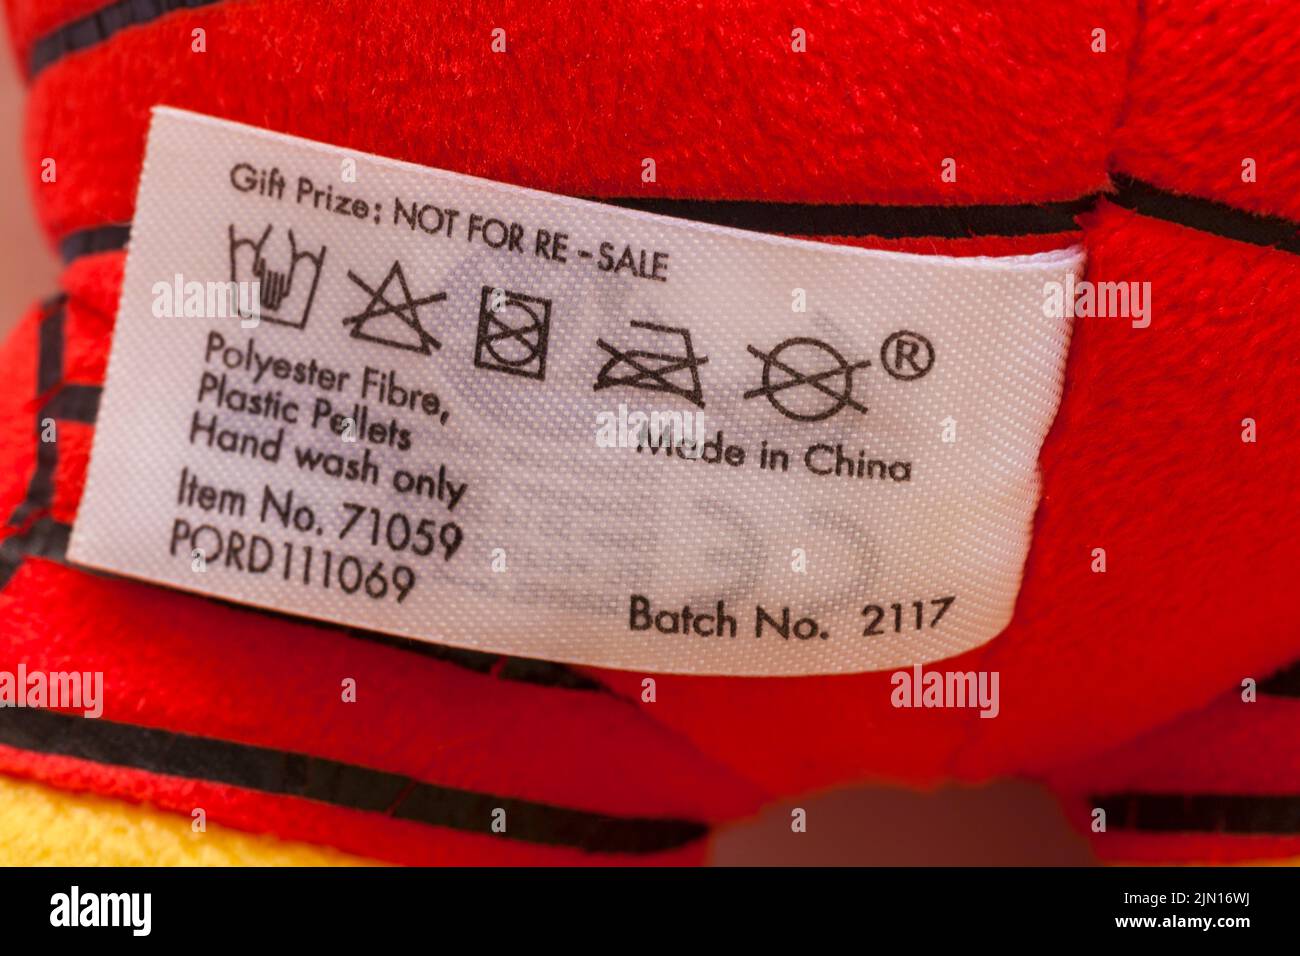 Fabriqué en Chine polyester fibre plastique pastilles laver à la main seulement étiquette lavage instructions sur l'étiquette dans Marvel Iron Man peluche douce jouet Banque D'Images